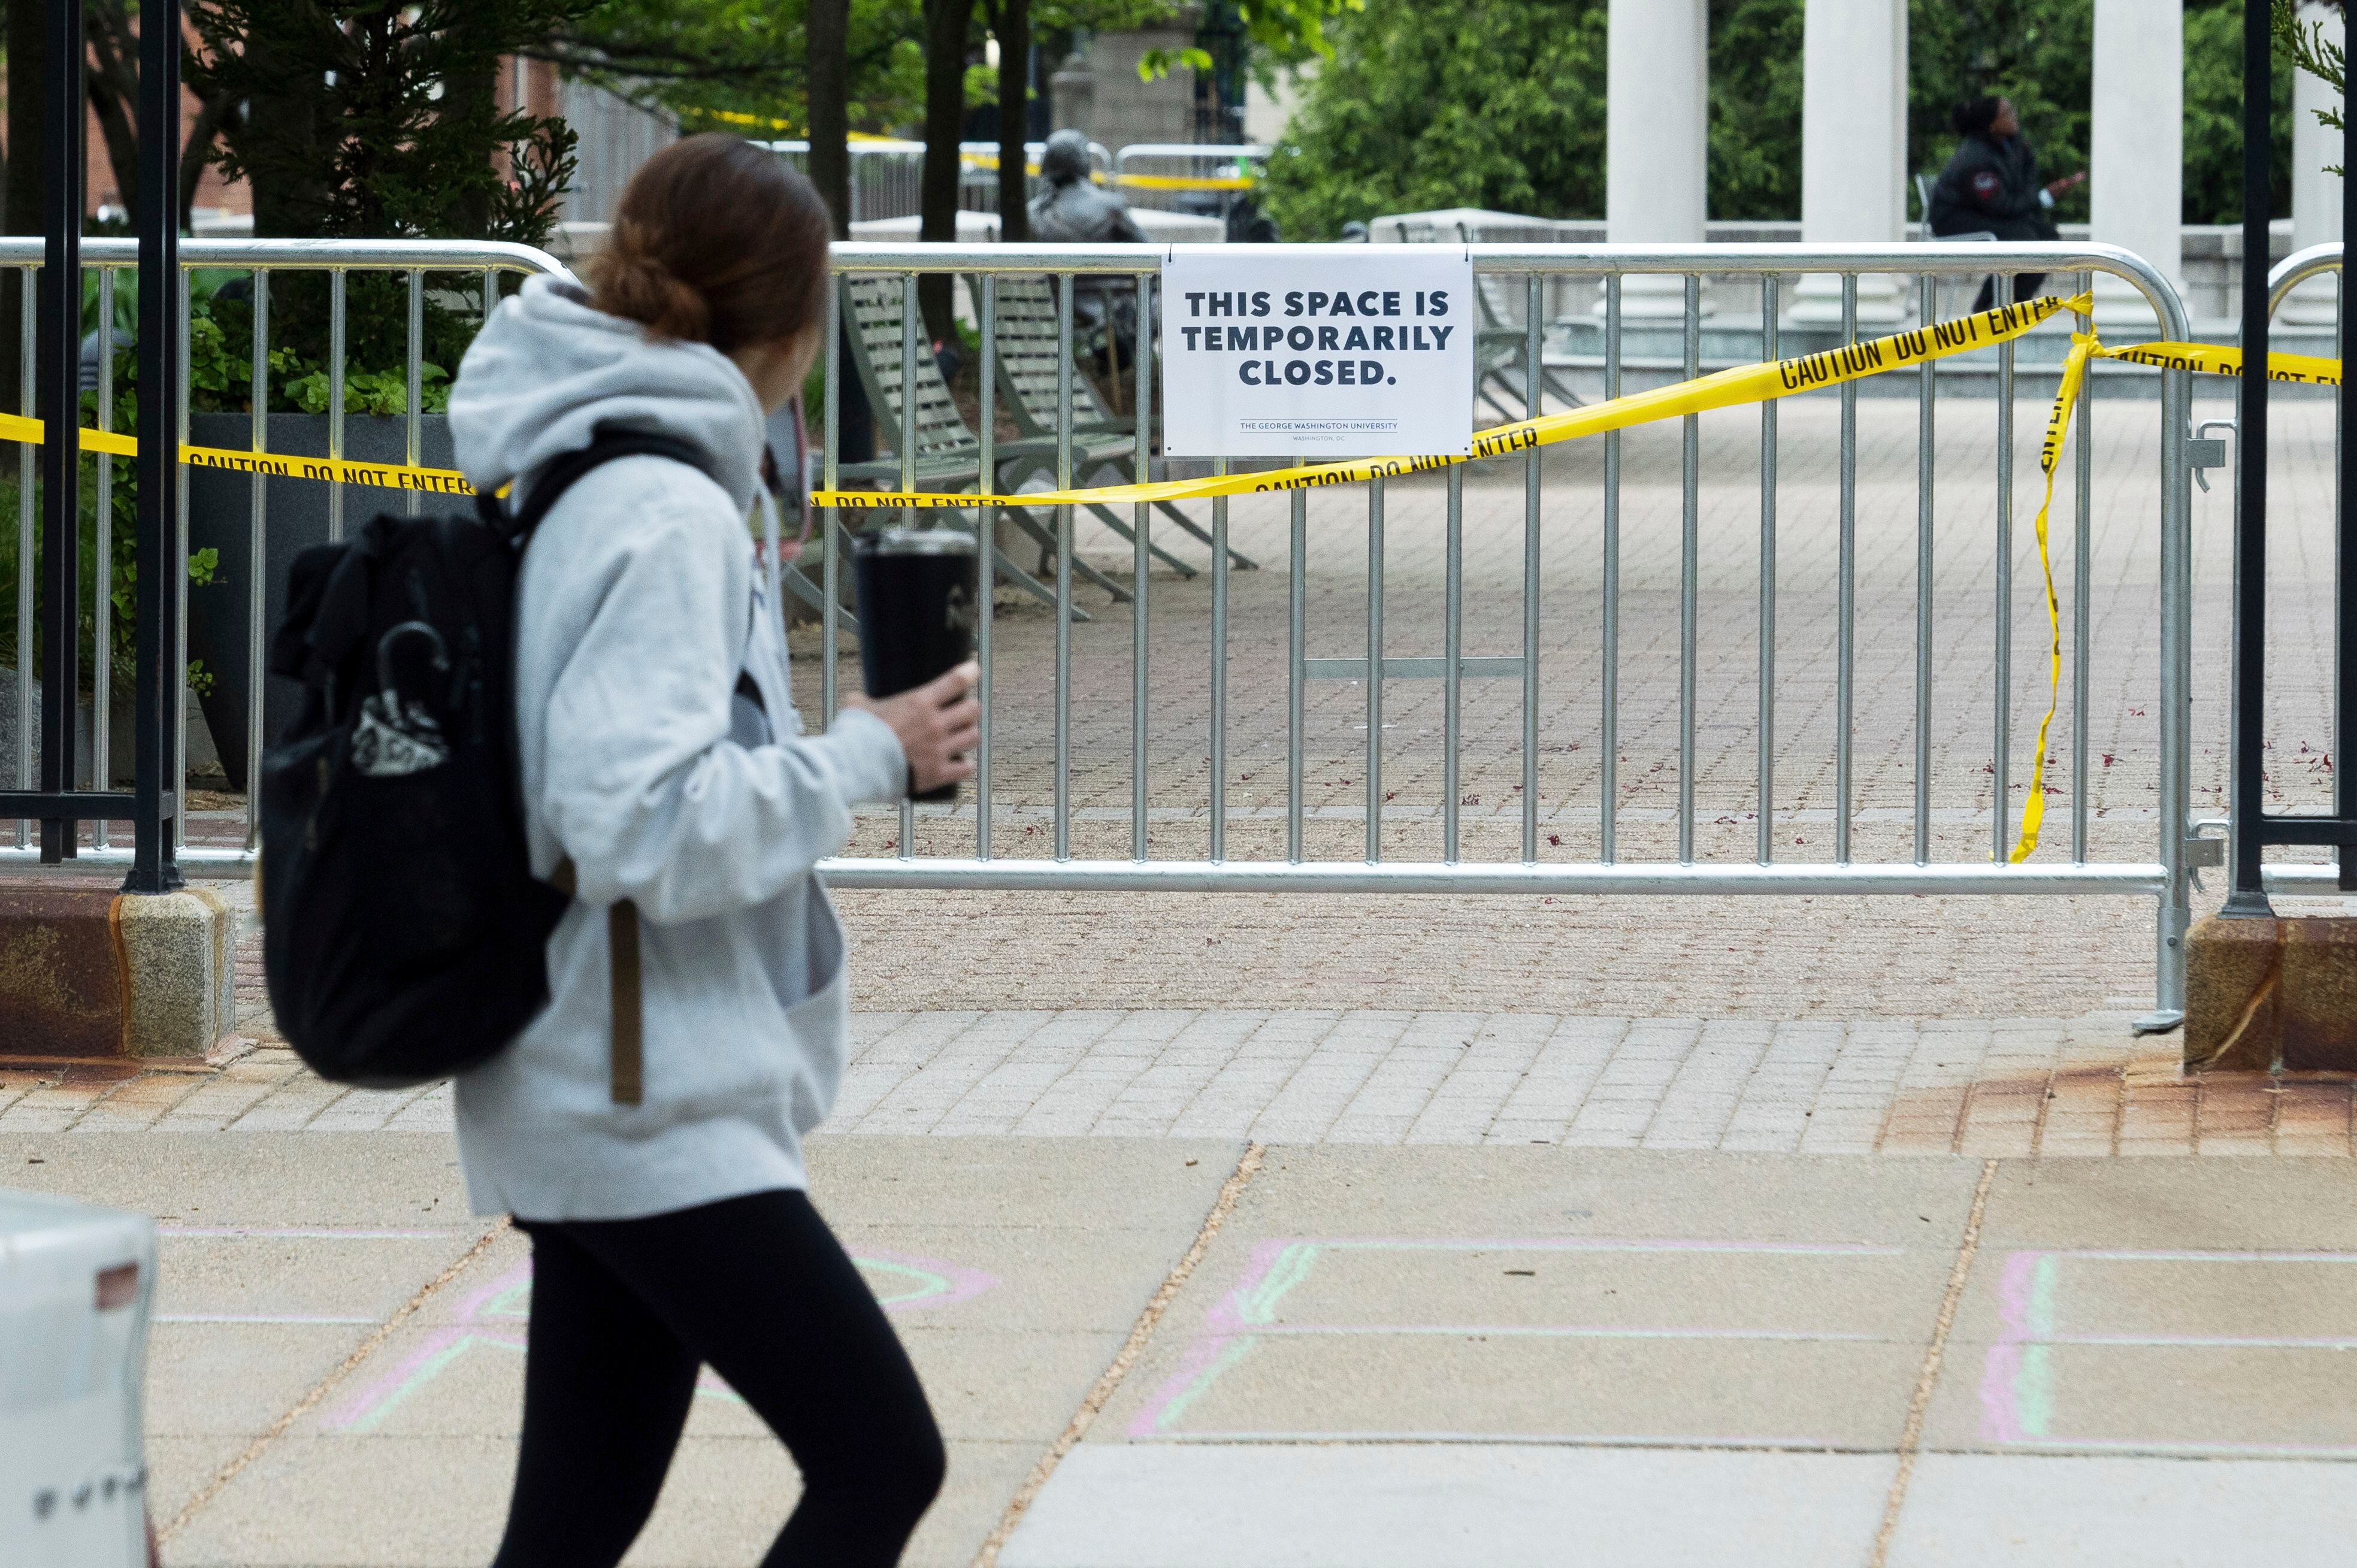 Una de las entradas de la Universidad George Washington aparece cerrada, mientras continúan las protestas estudiantiles en Estados Unidos